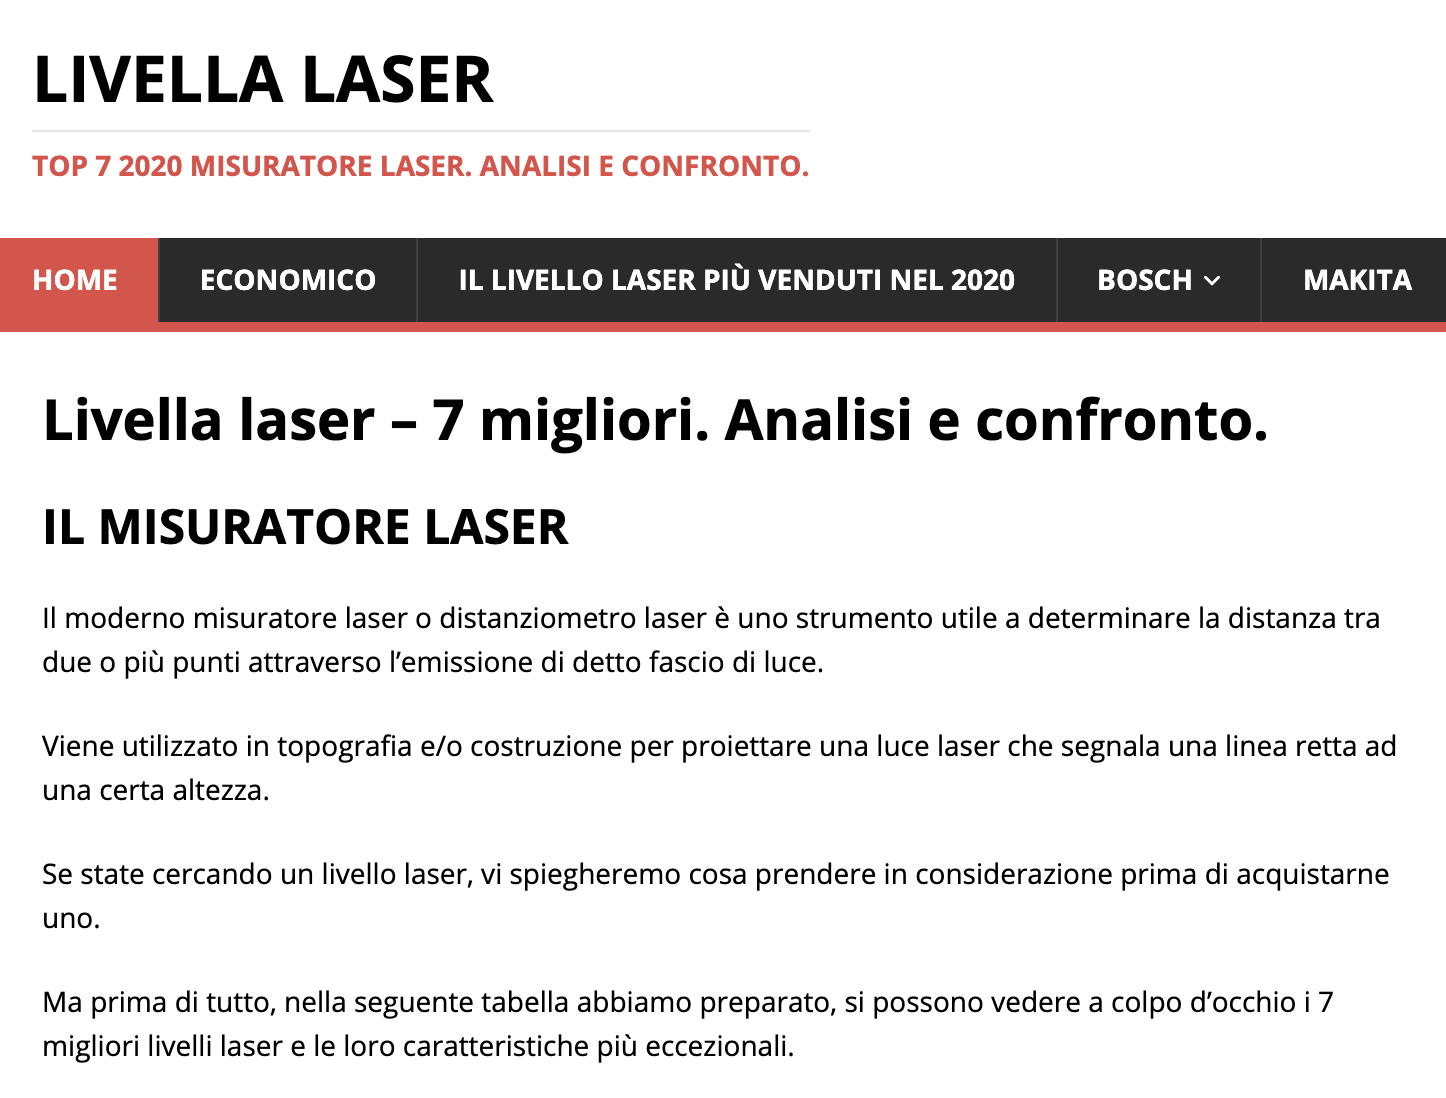 Livelli laser